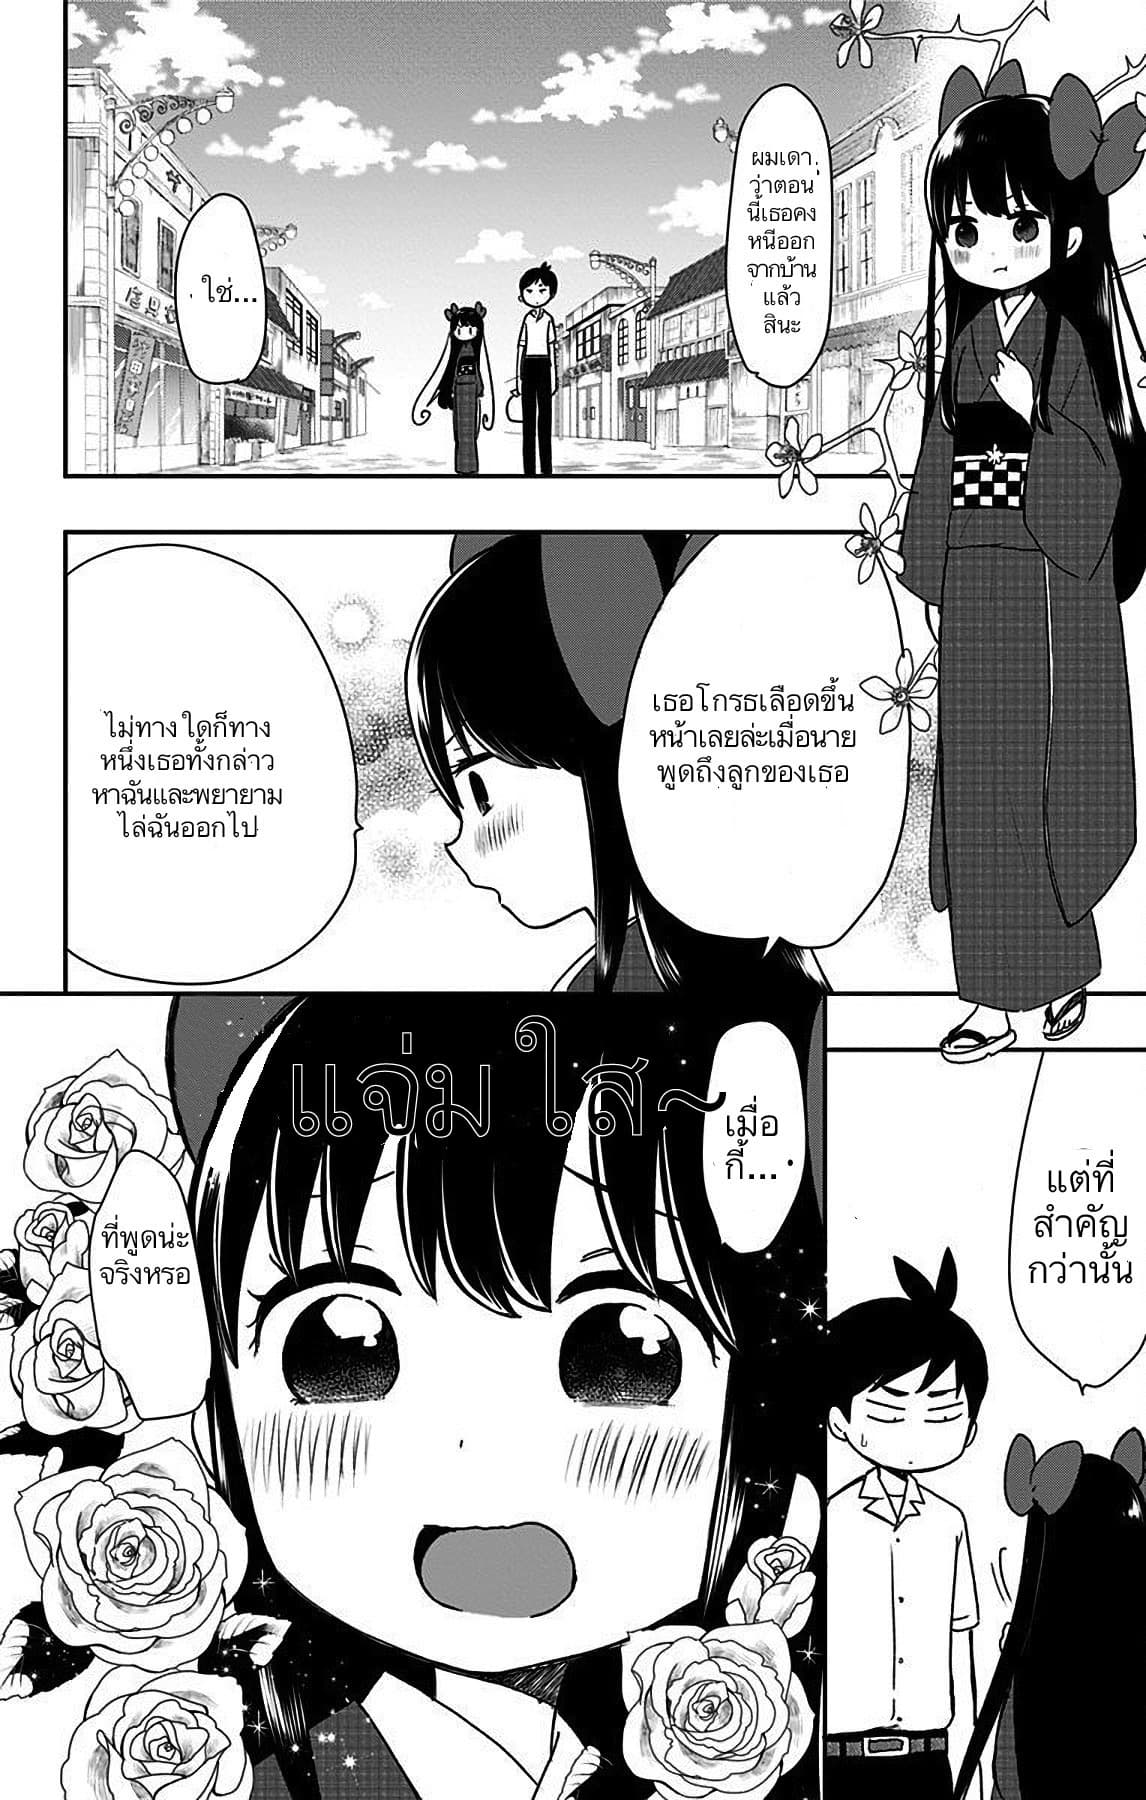 Shouwa Otome Otogibanashi เรื่องเล่าของสาวน้อย ยุคโชวะ ตอนที่ 9 (12)